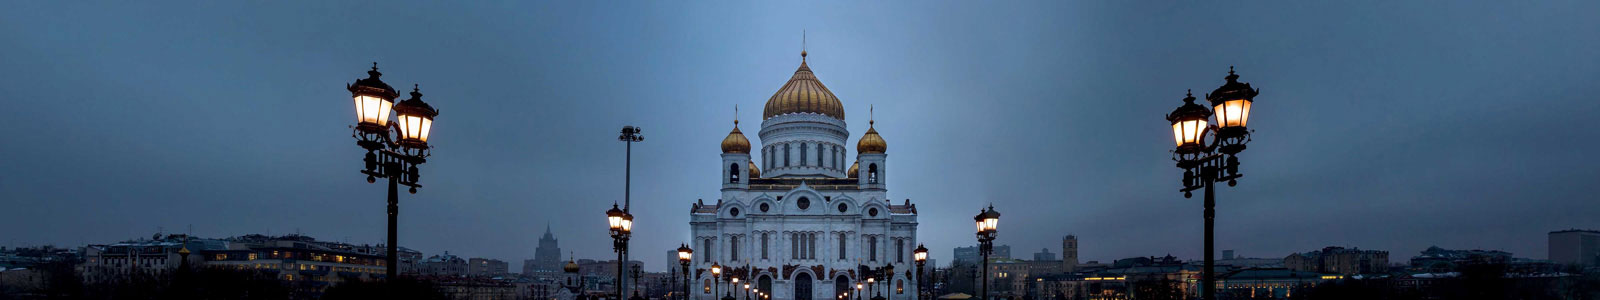 №2636 - Панорамный вид на собор Христа Спасителя зимней ночью